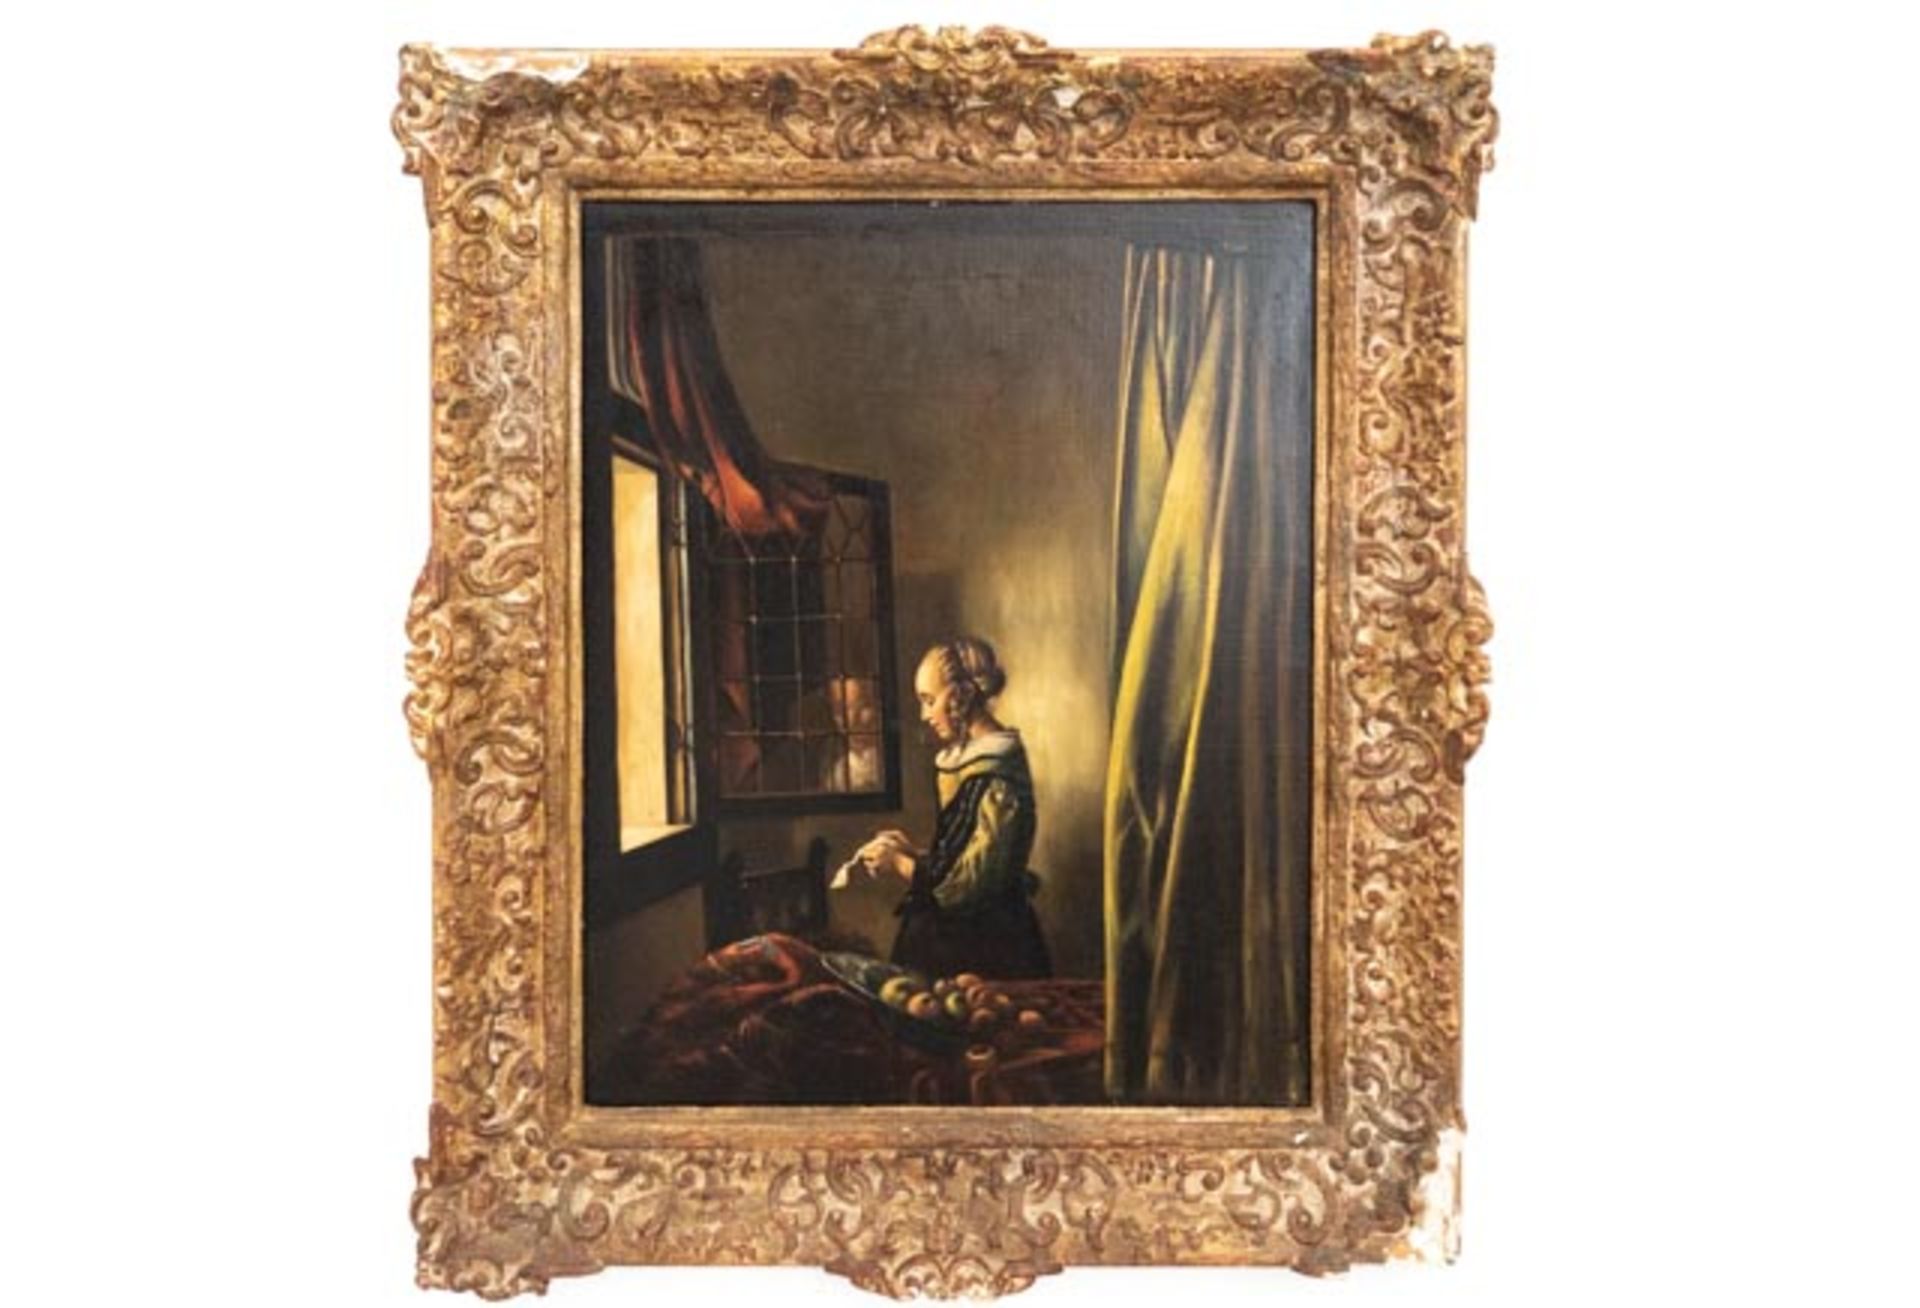 Gemälde "Frau am Fenster"